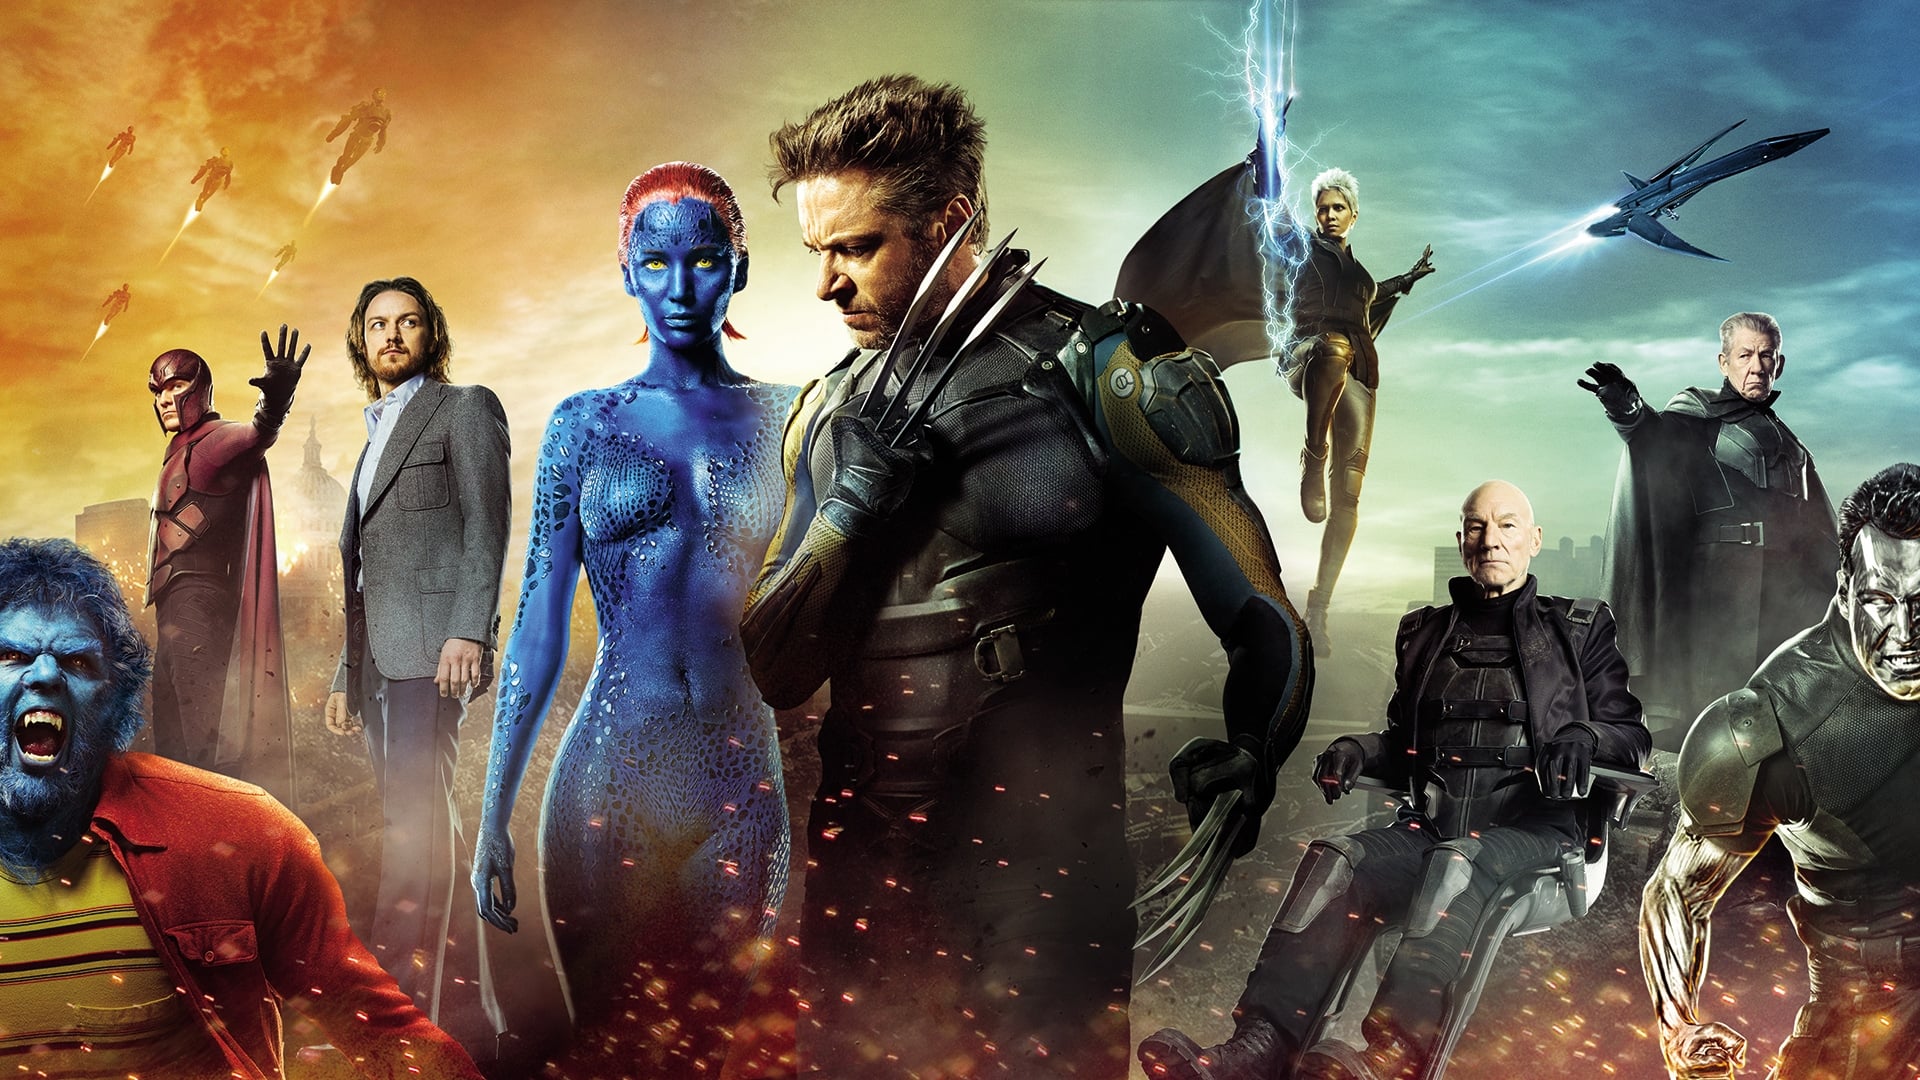 X-เม็น : สงครามวันพิฆาตกู้อนาคต X-Men Days - X ออนไลน์โดยสมบูรณ์ในปี 2014